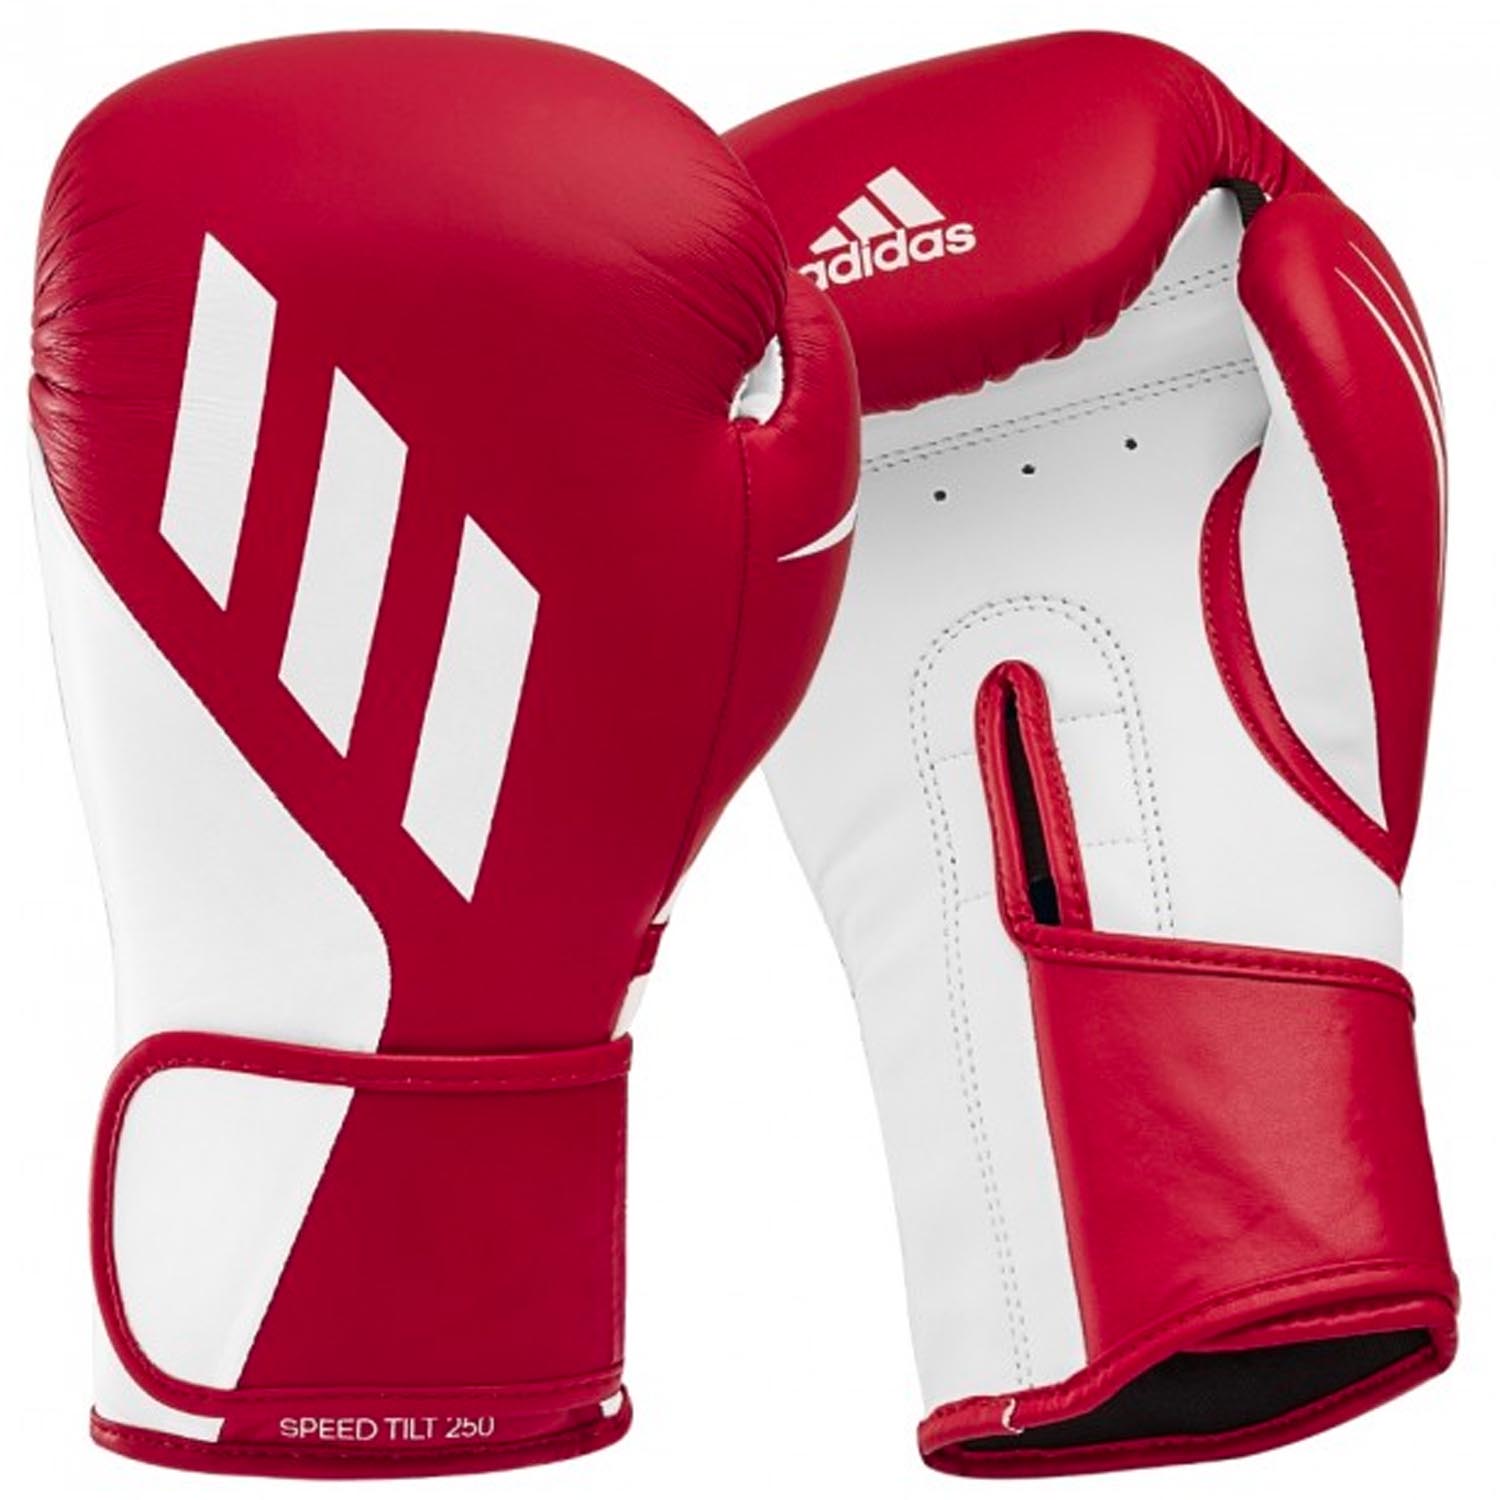 adidas Boxhandschuhe, Speed, Tilt, 250, rot-weiß, 12 Oz